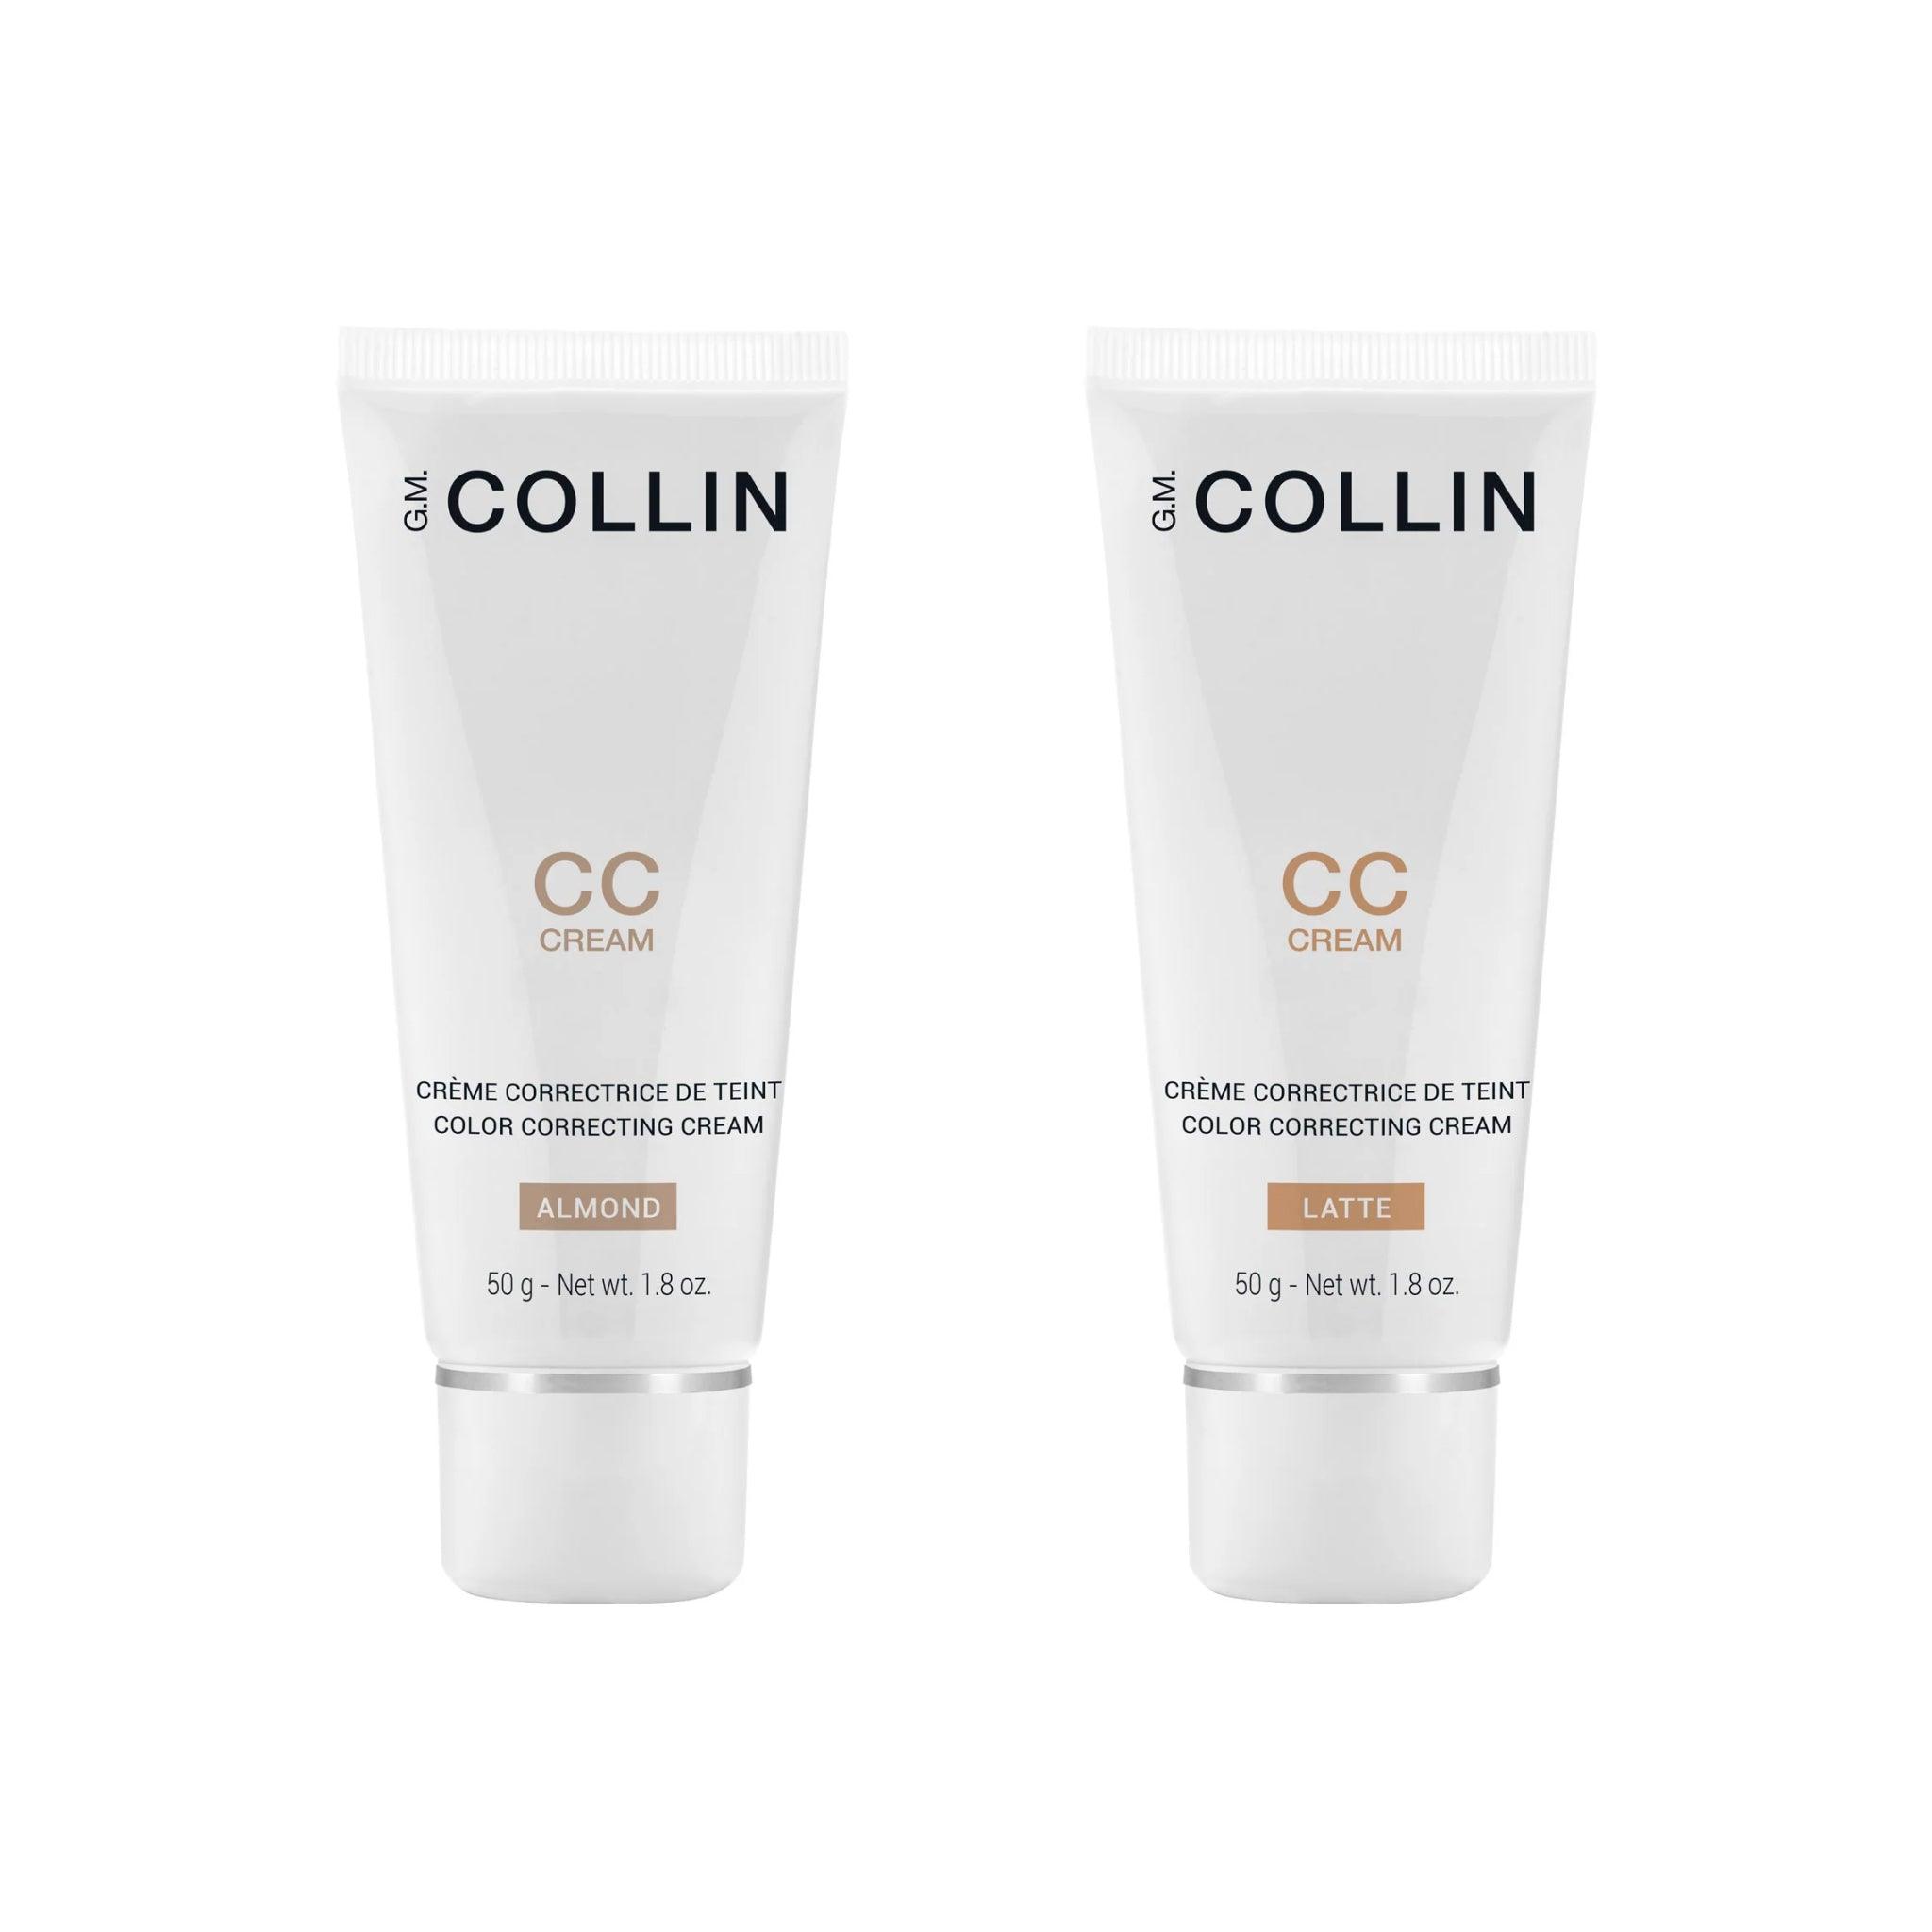 GM Collin CC Cream